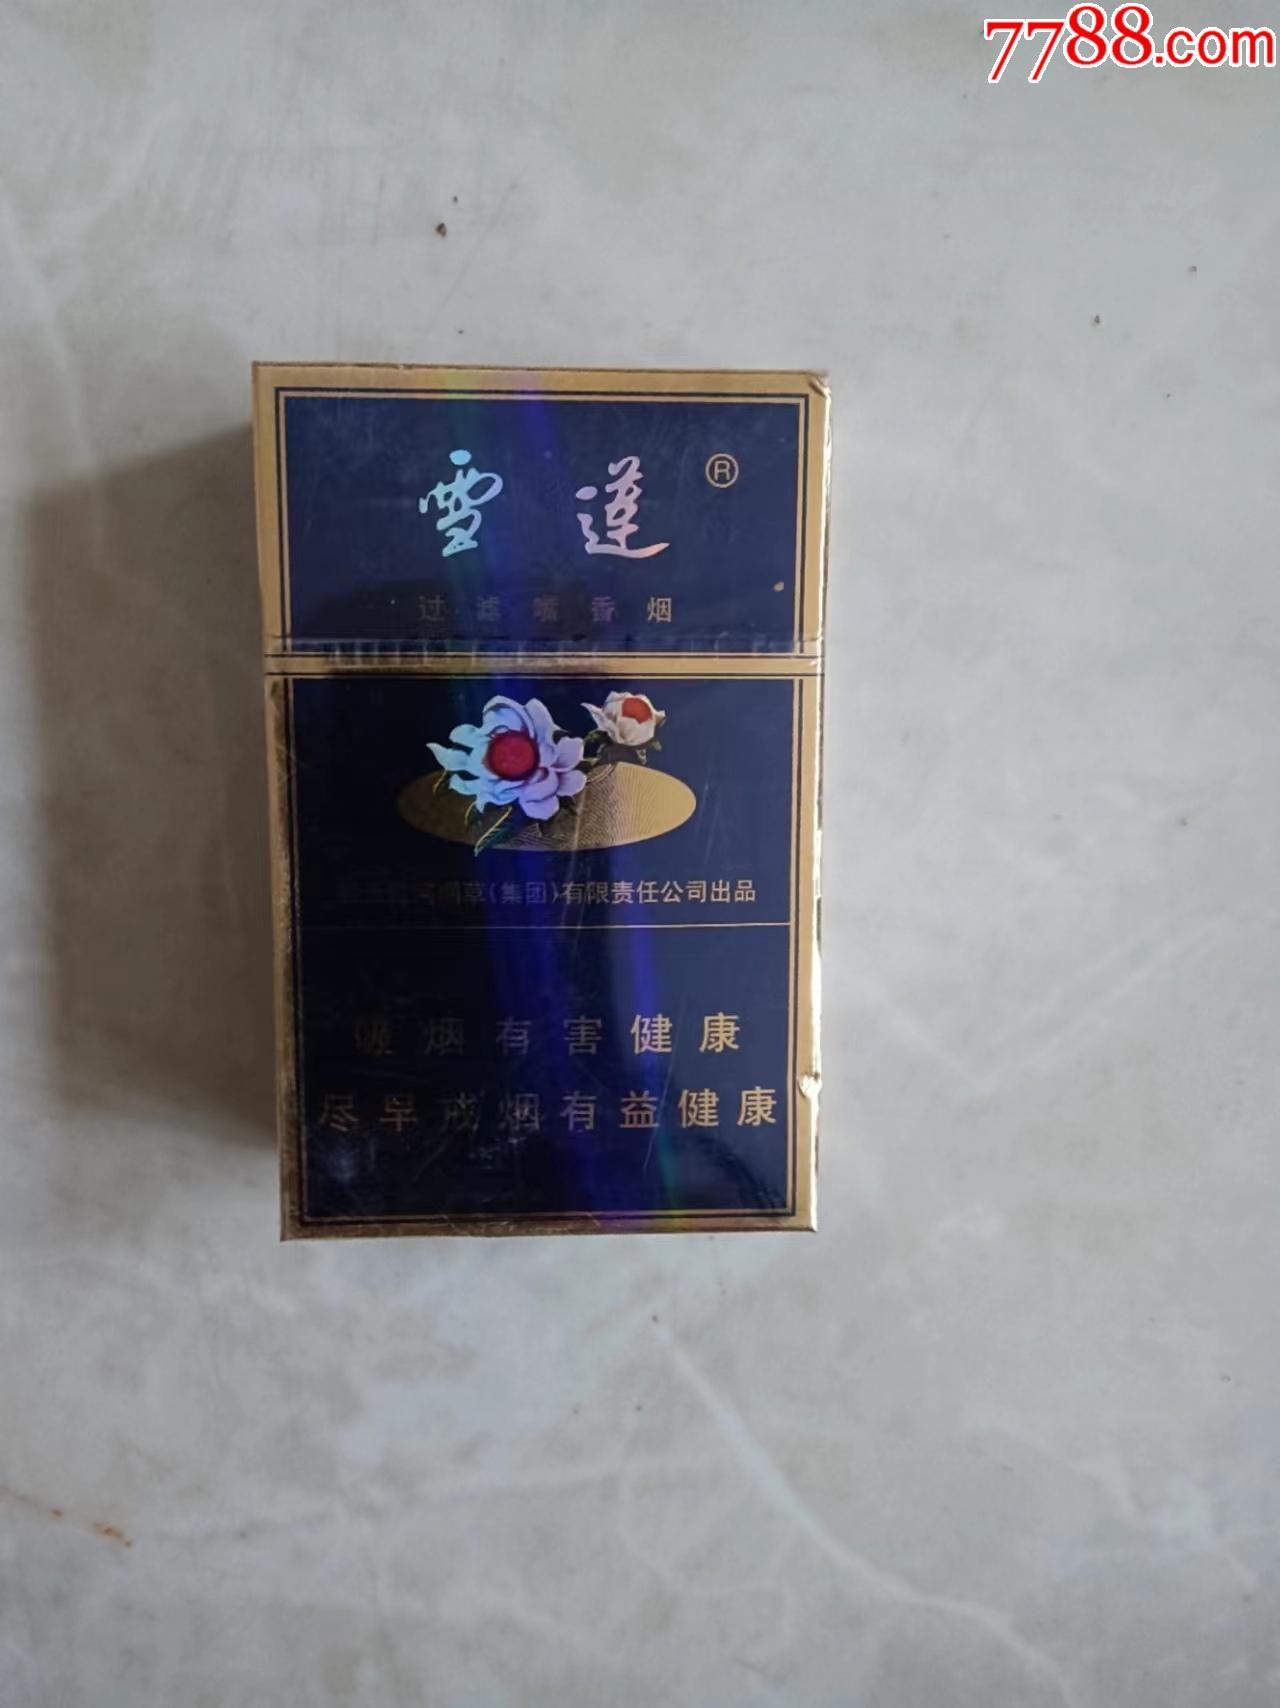 新疆雪莲香烟价格图片图片